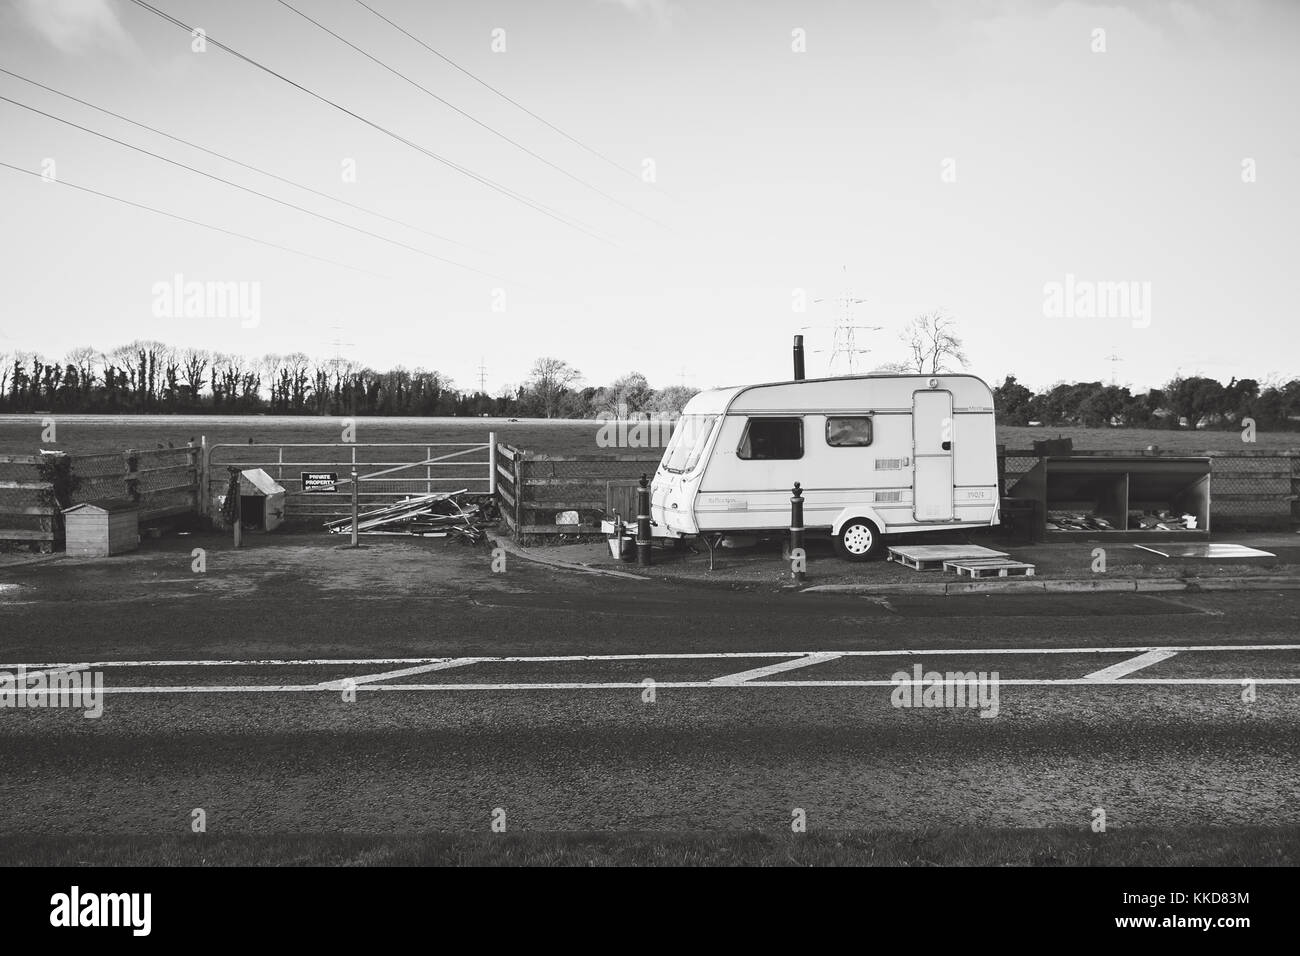 Celbridge, Irlanda. 29 nov 2017: Irish viaggiatori di assestamento in celbridge. roulotte parcheggiate sul lato della strada all'ingresso del campo. Foto Stock